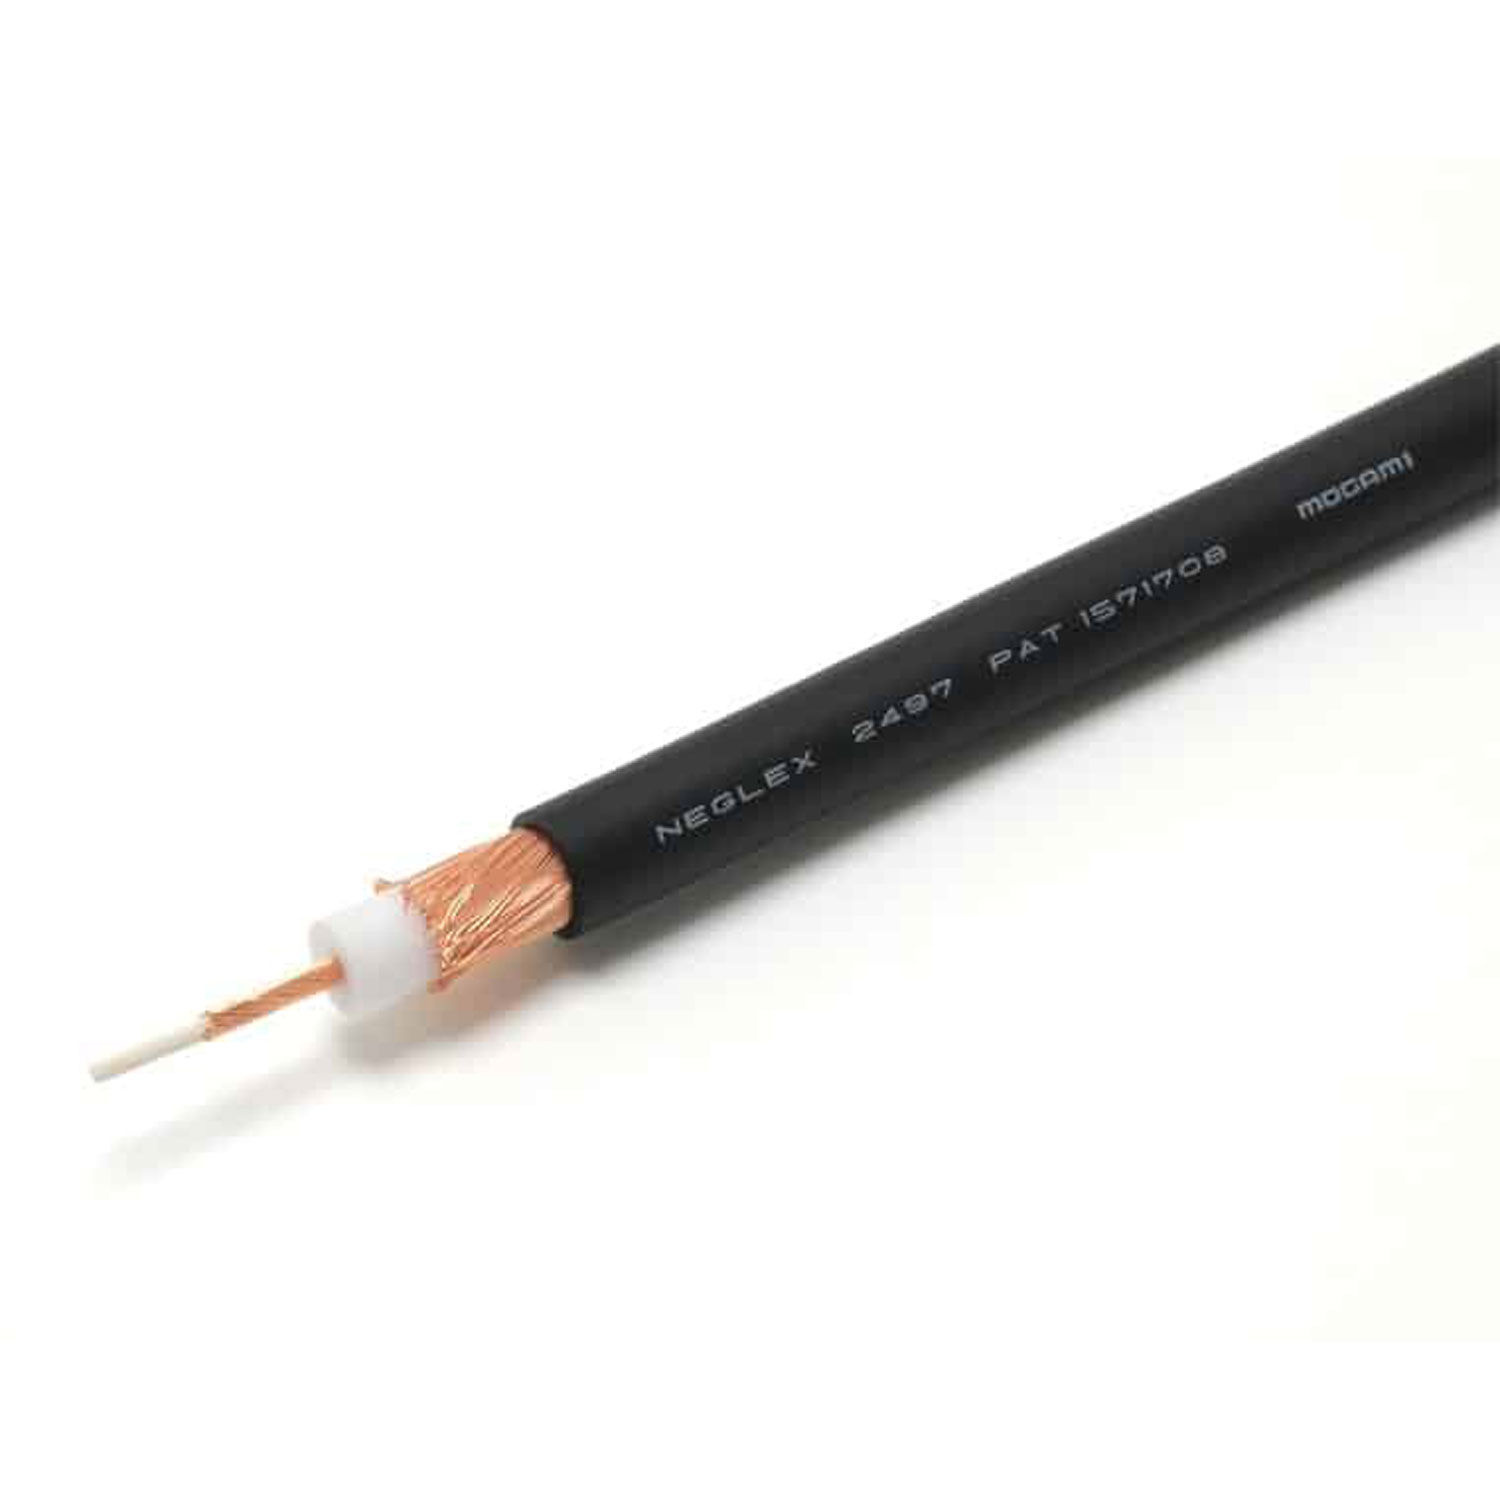 Mogami W2497 Hi-Fi Audio Cable (Black, 50m)